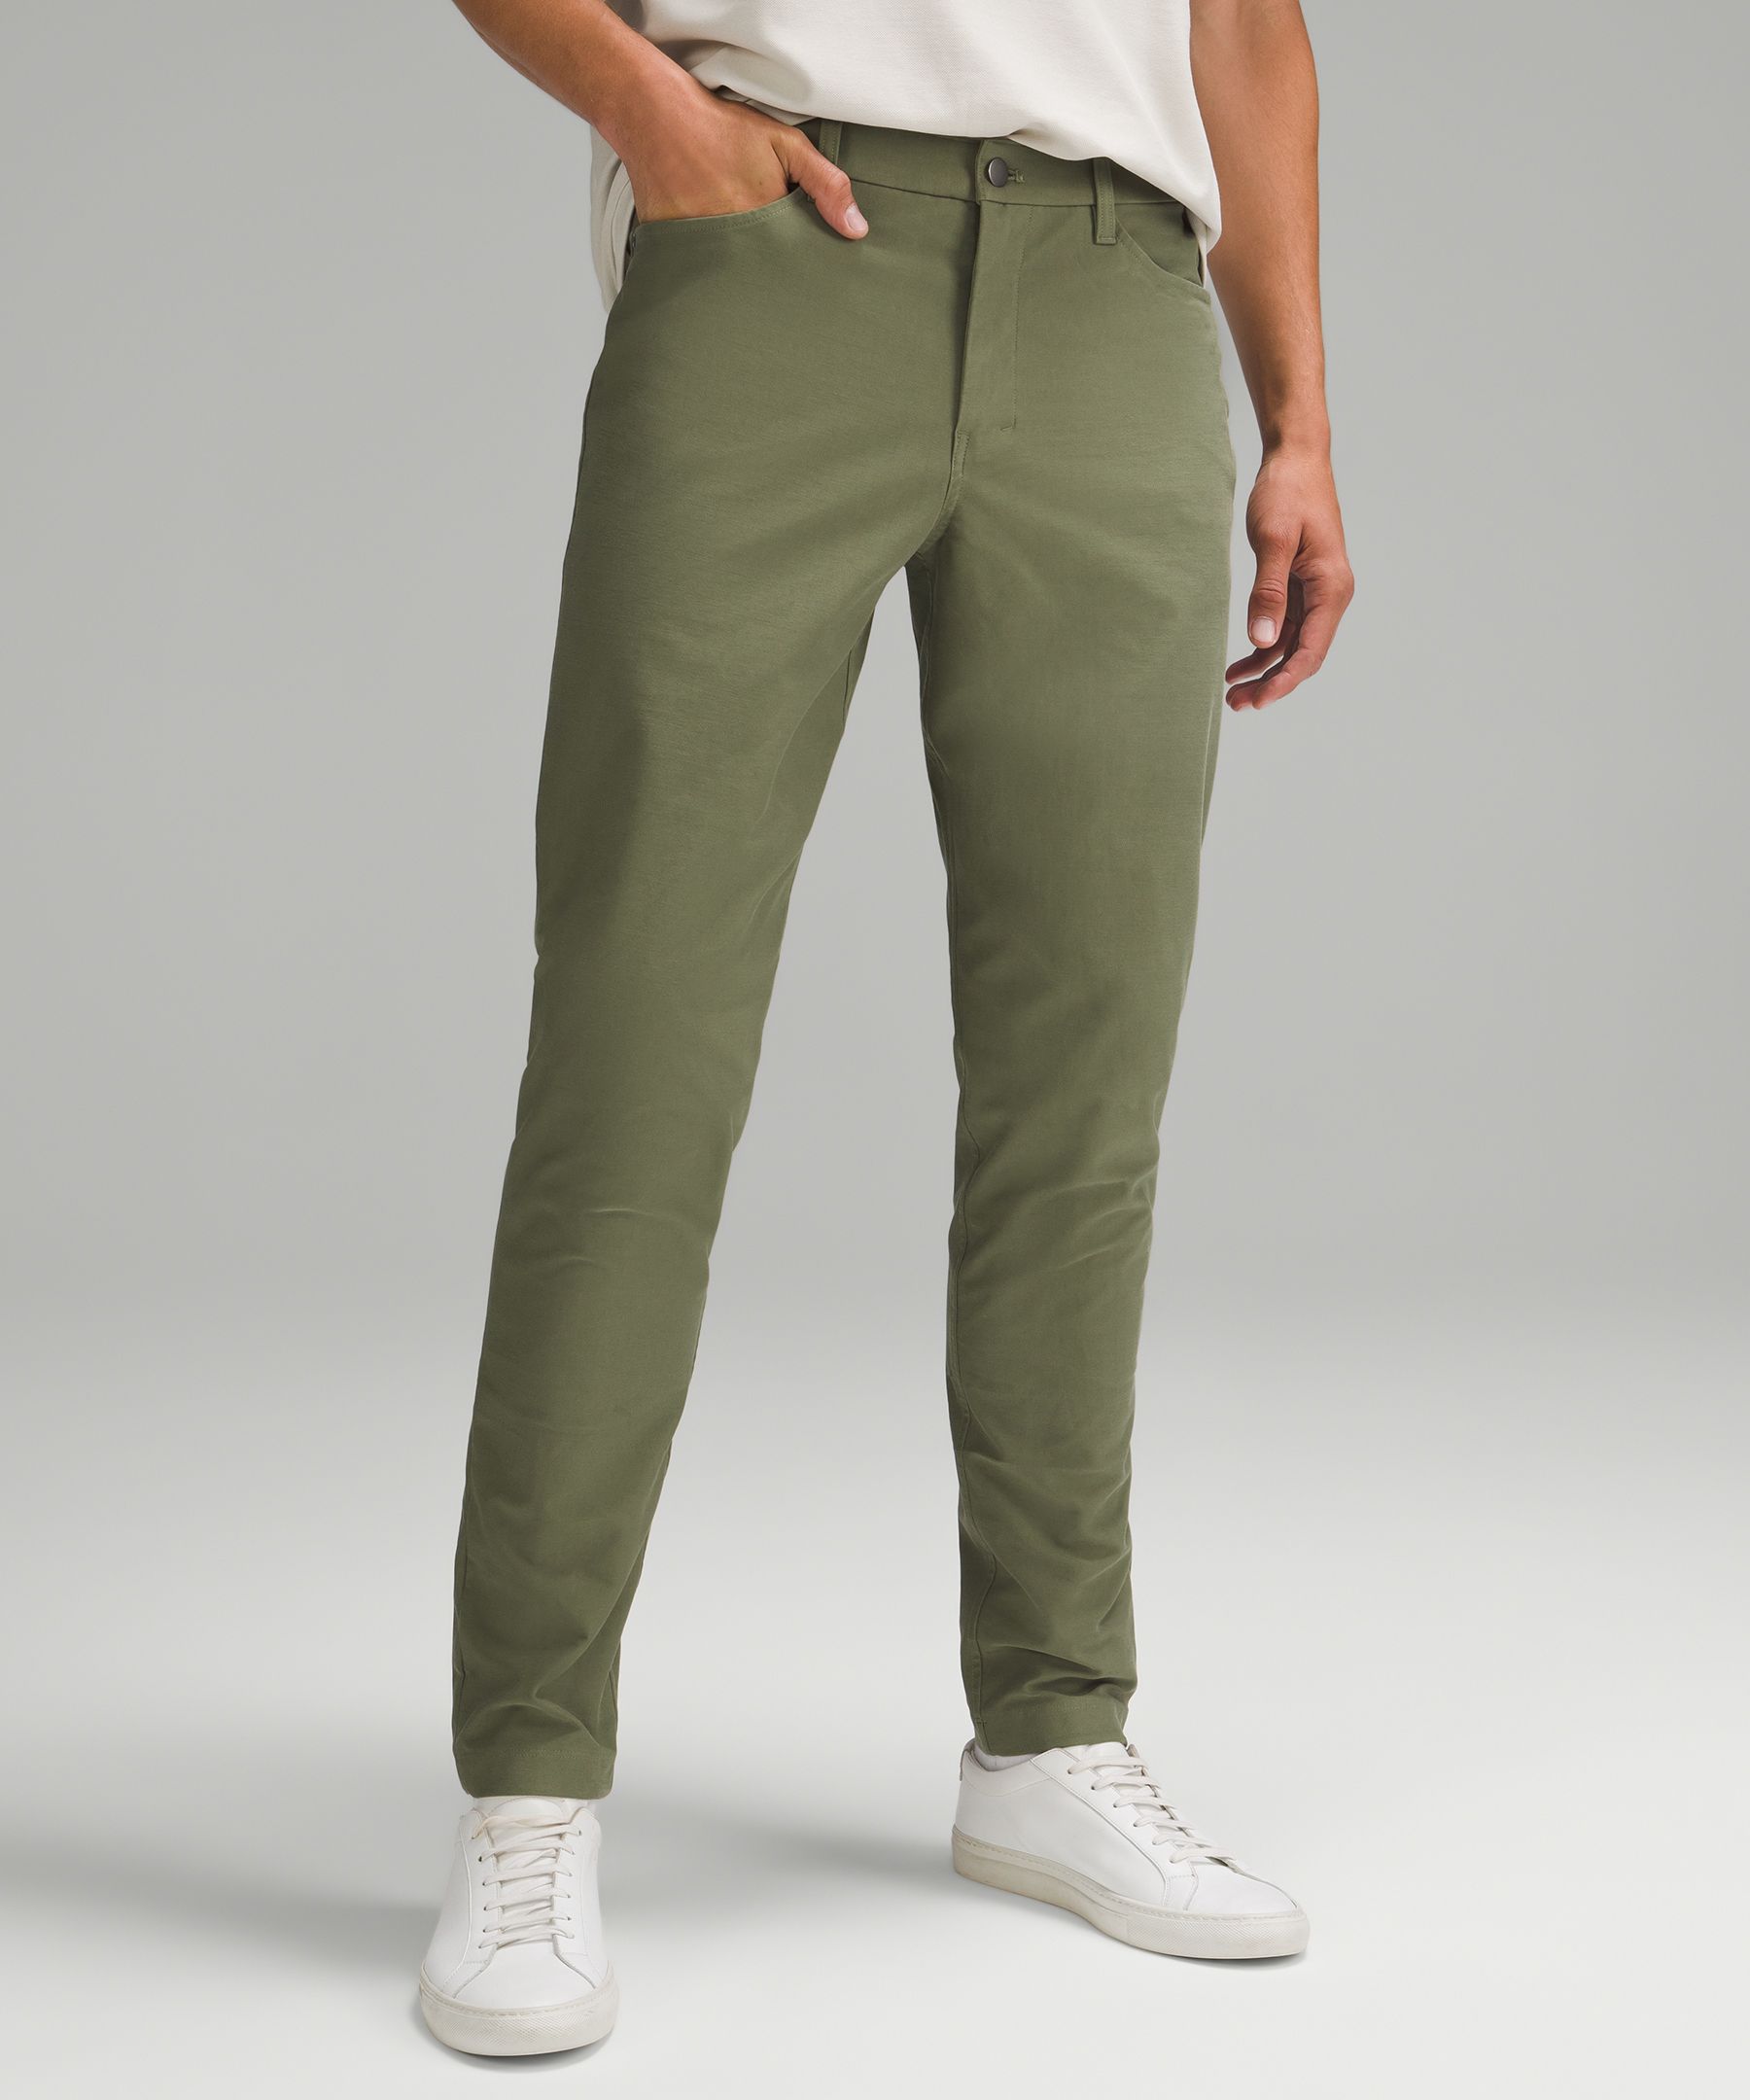 ABC Slim-Fit 5 Pocket Pant 34 *Utilitech, Men's Trousers, lululemon